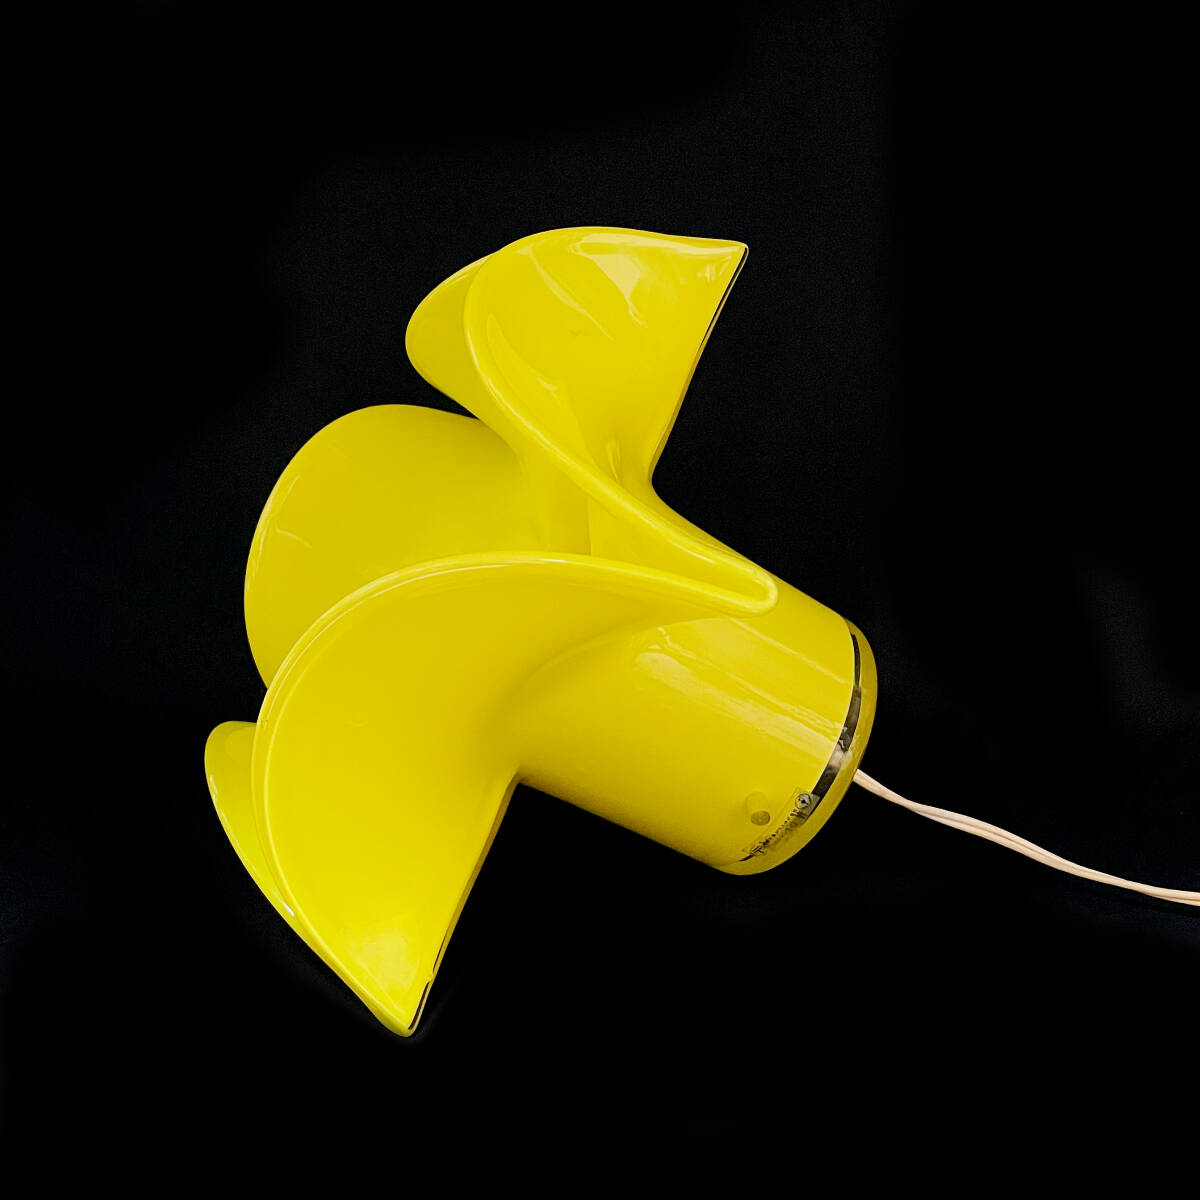  электризация OK! Iwata художественное стекло цветок type лампа / желтый / желтый цвет / retro / античный / Iwata стекло / цветок / непрямое освещение / интерьер / украшение 